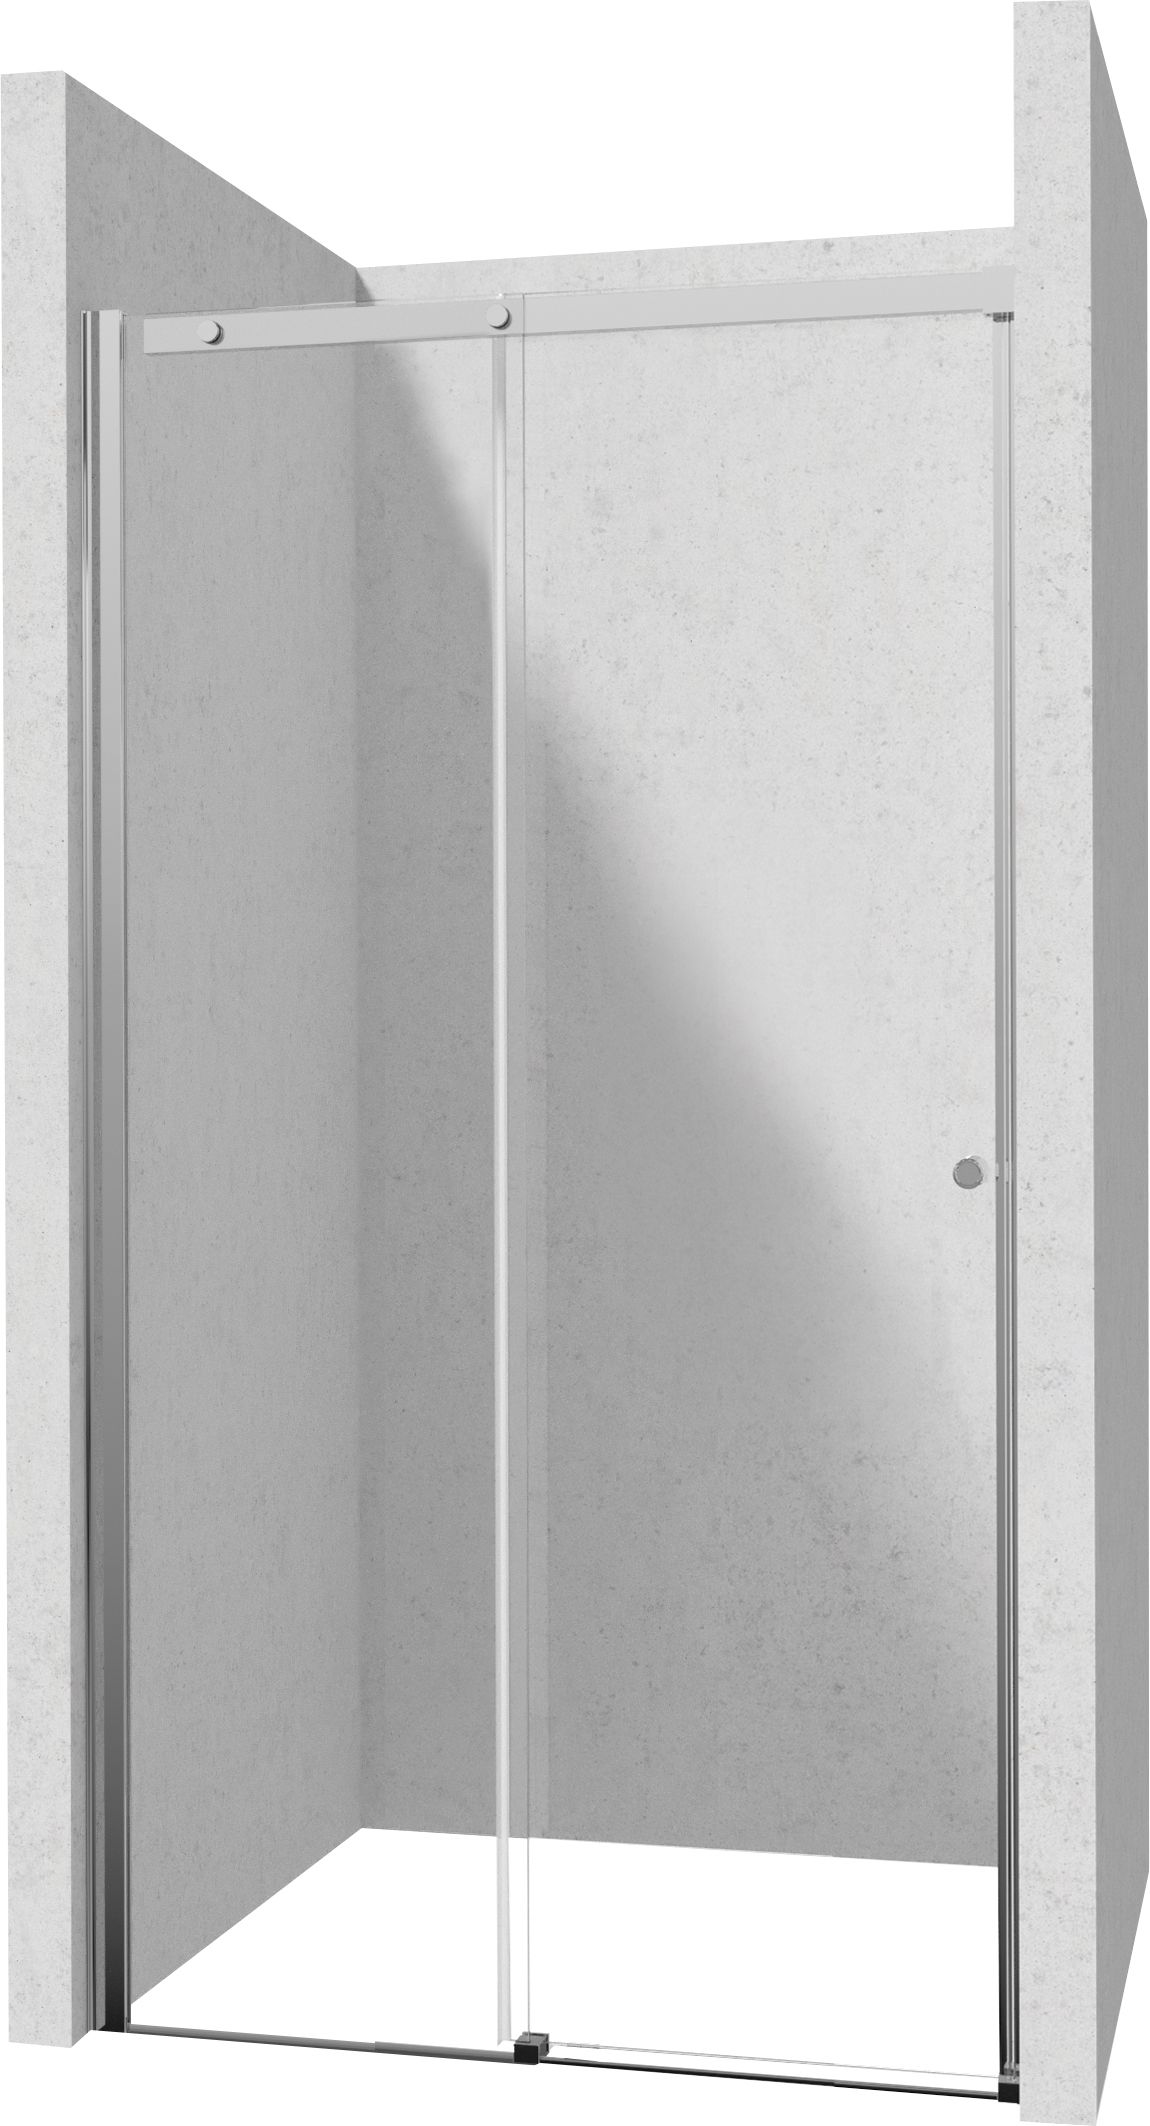 Drzwi prysznicowe 110 cm - przesuwne - KTSP011P - Główne zdjęcie produktowe